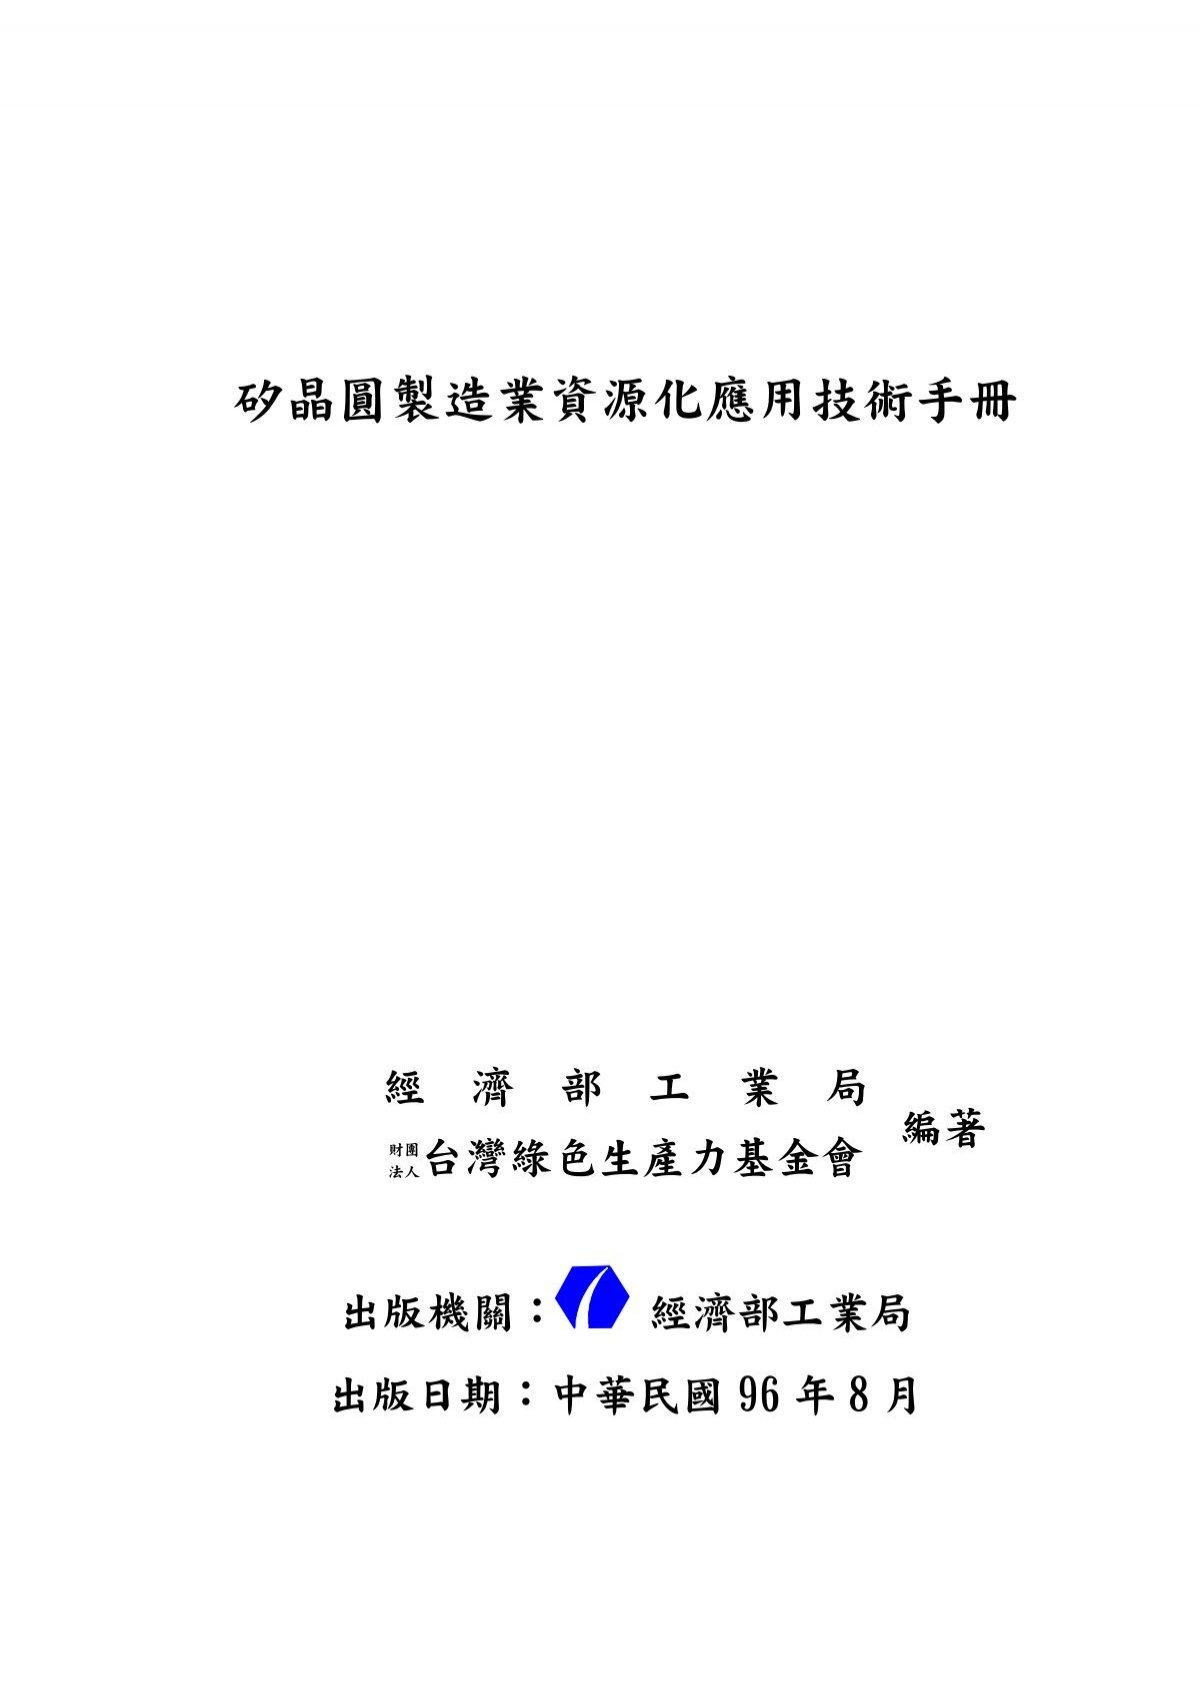 矽晶圓製造業資源化應用技術手冊 臺灣大學圖書館 公開取用電子書